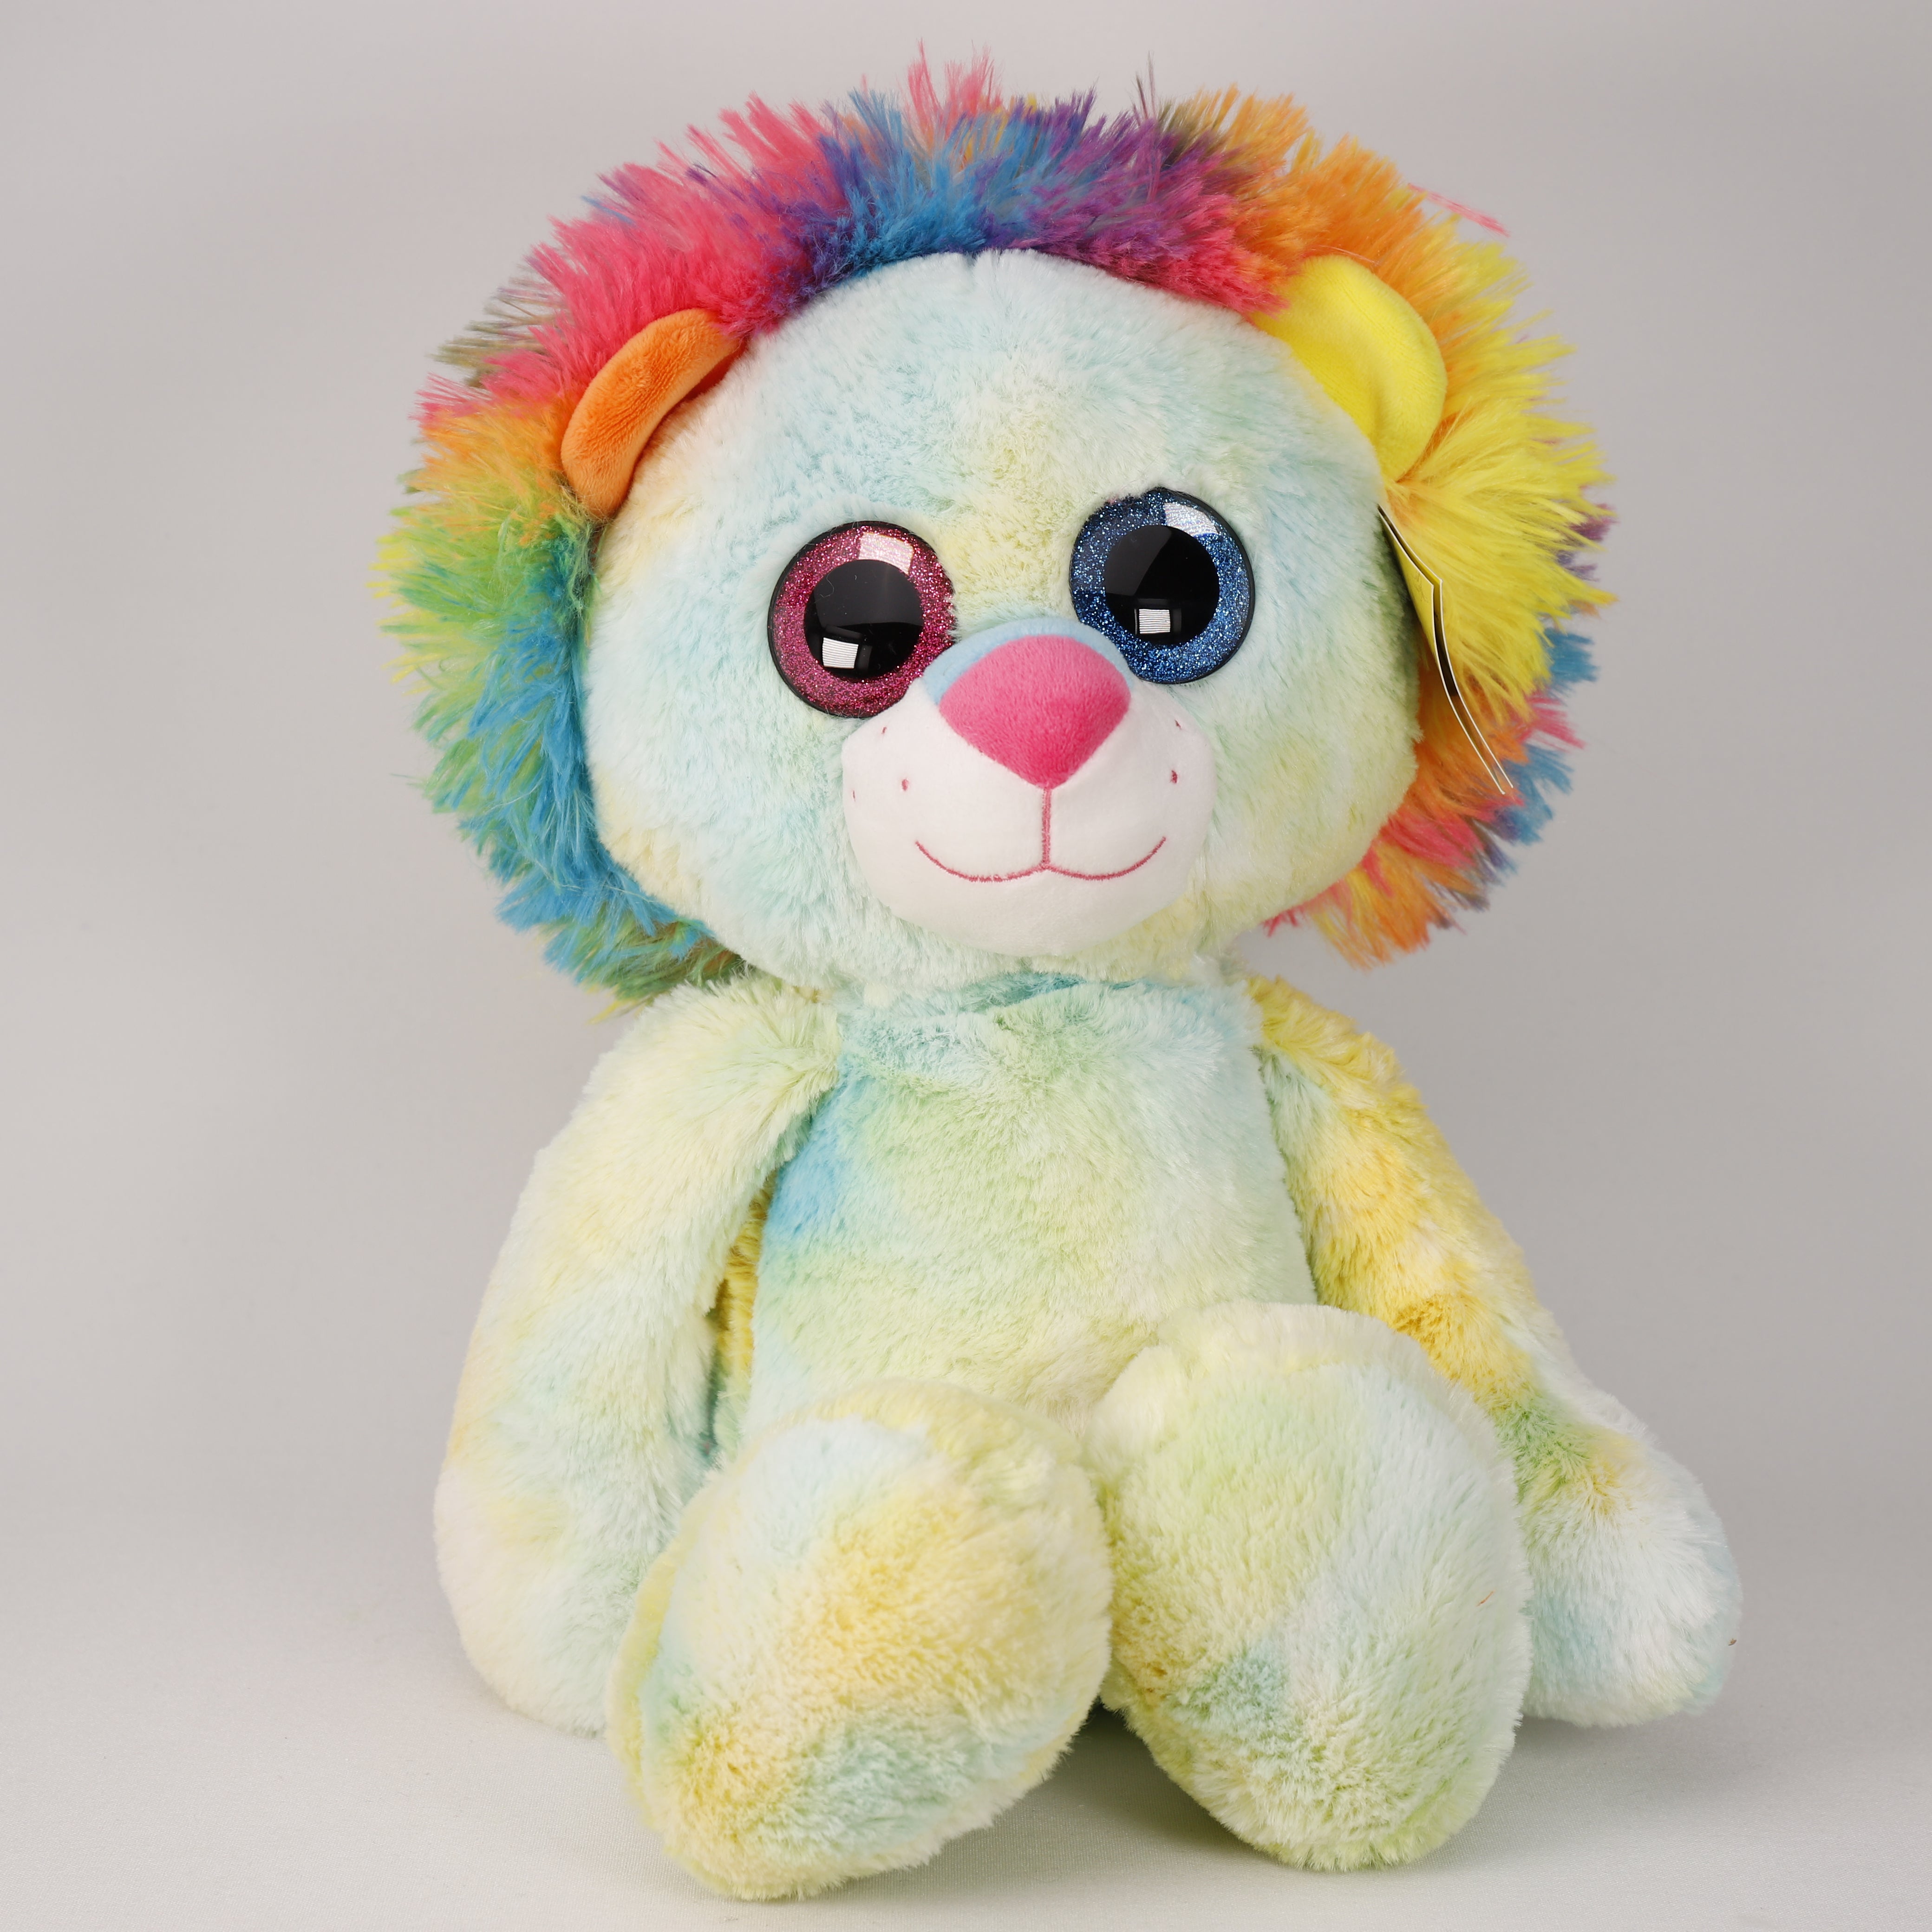 Löwe, Plüschtier 32 cm, Glitter, Große Augen, Spielzeug, Bunt, Super Weich, Sunkid